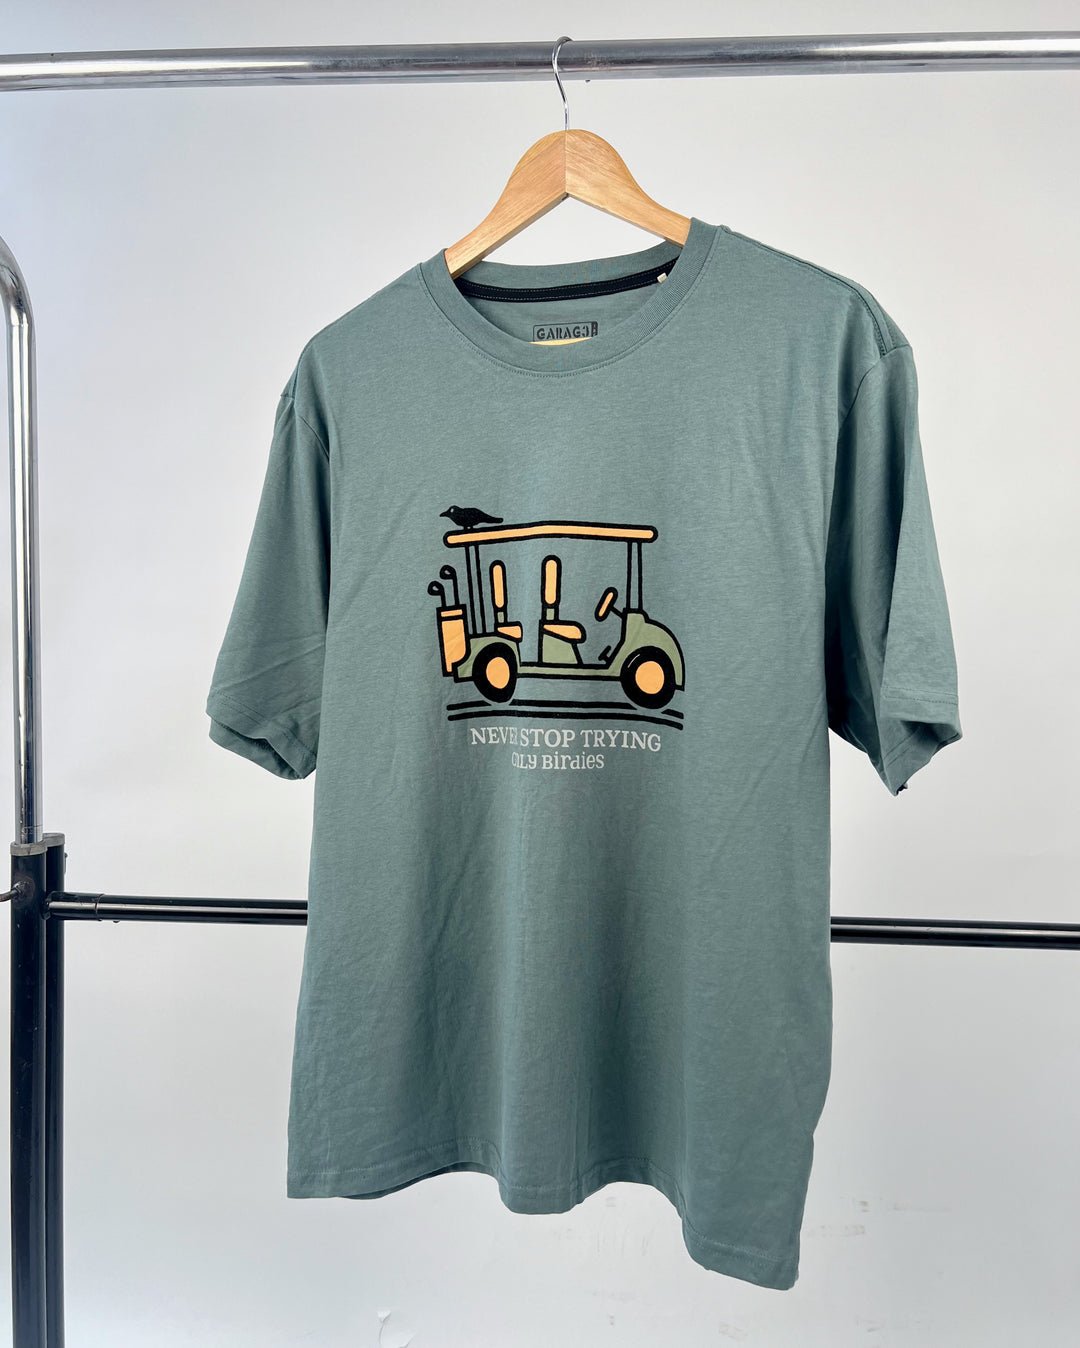 Garage Golf Cart T-shirt